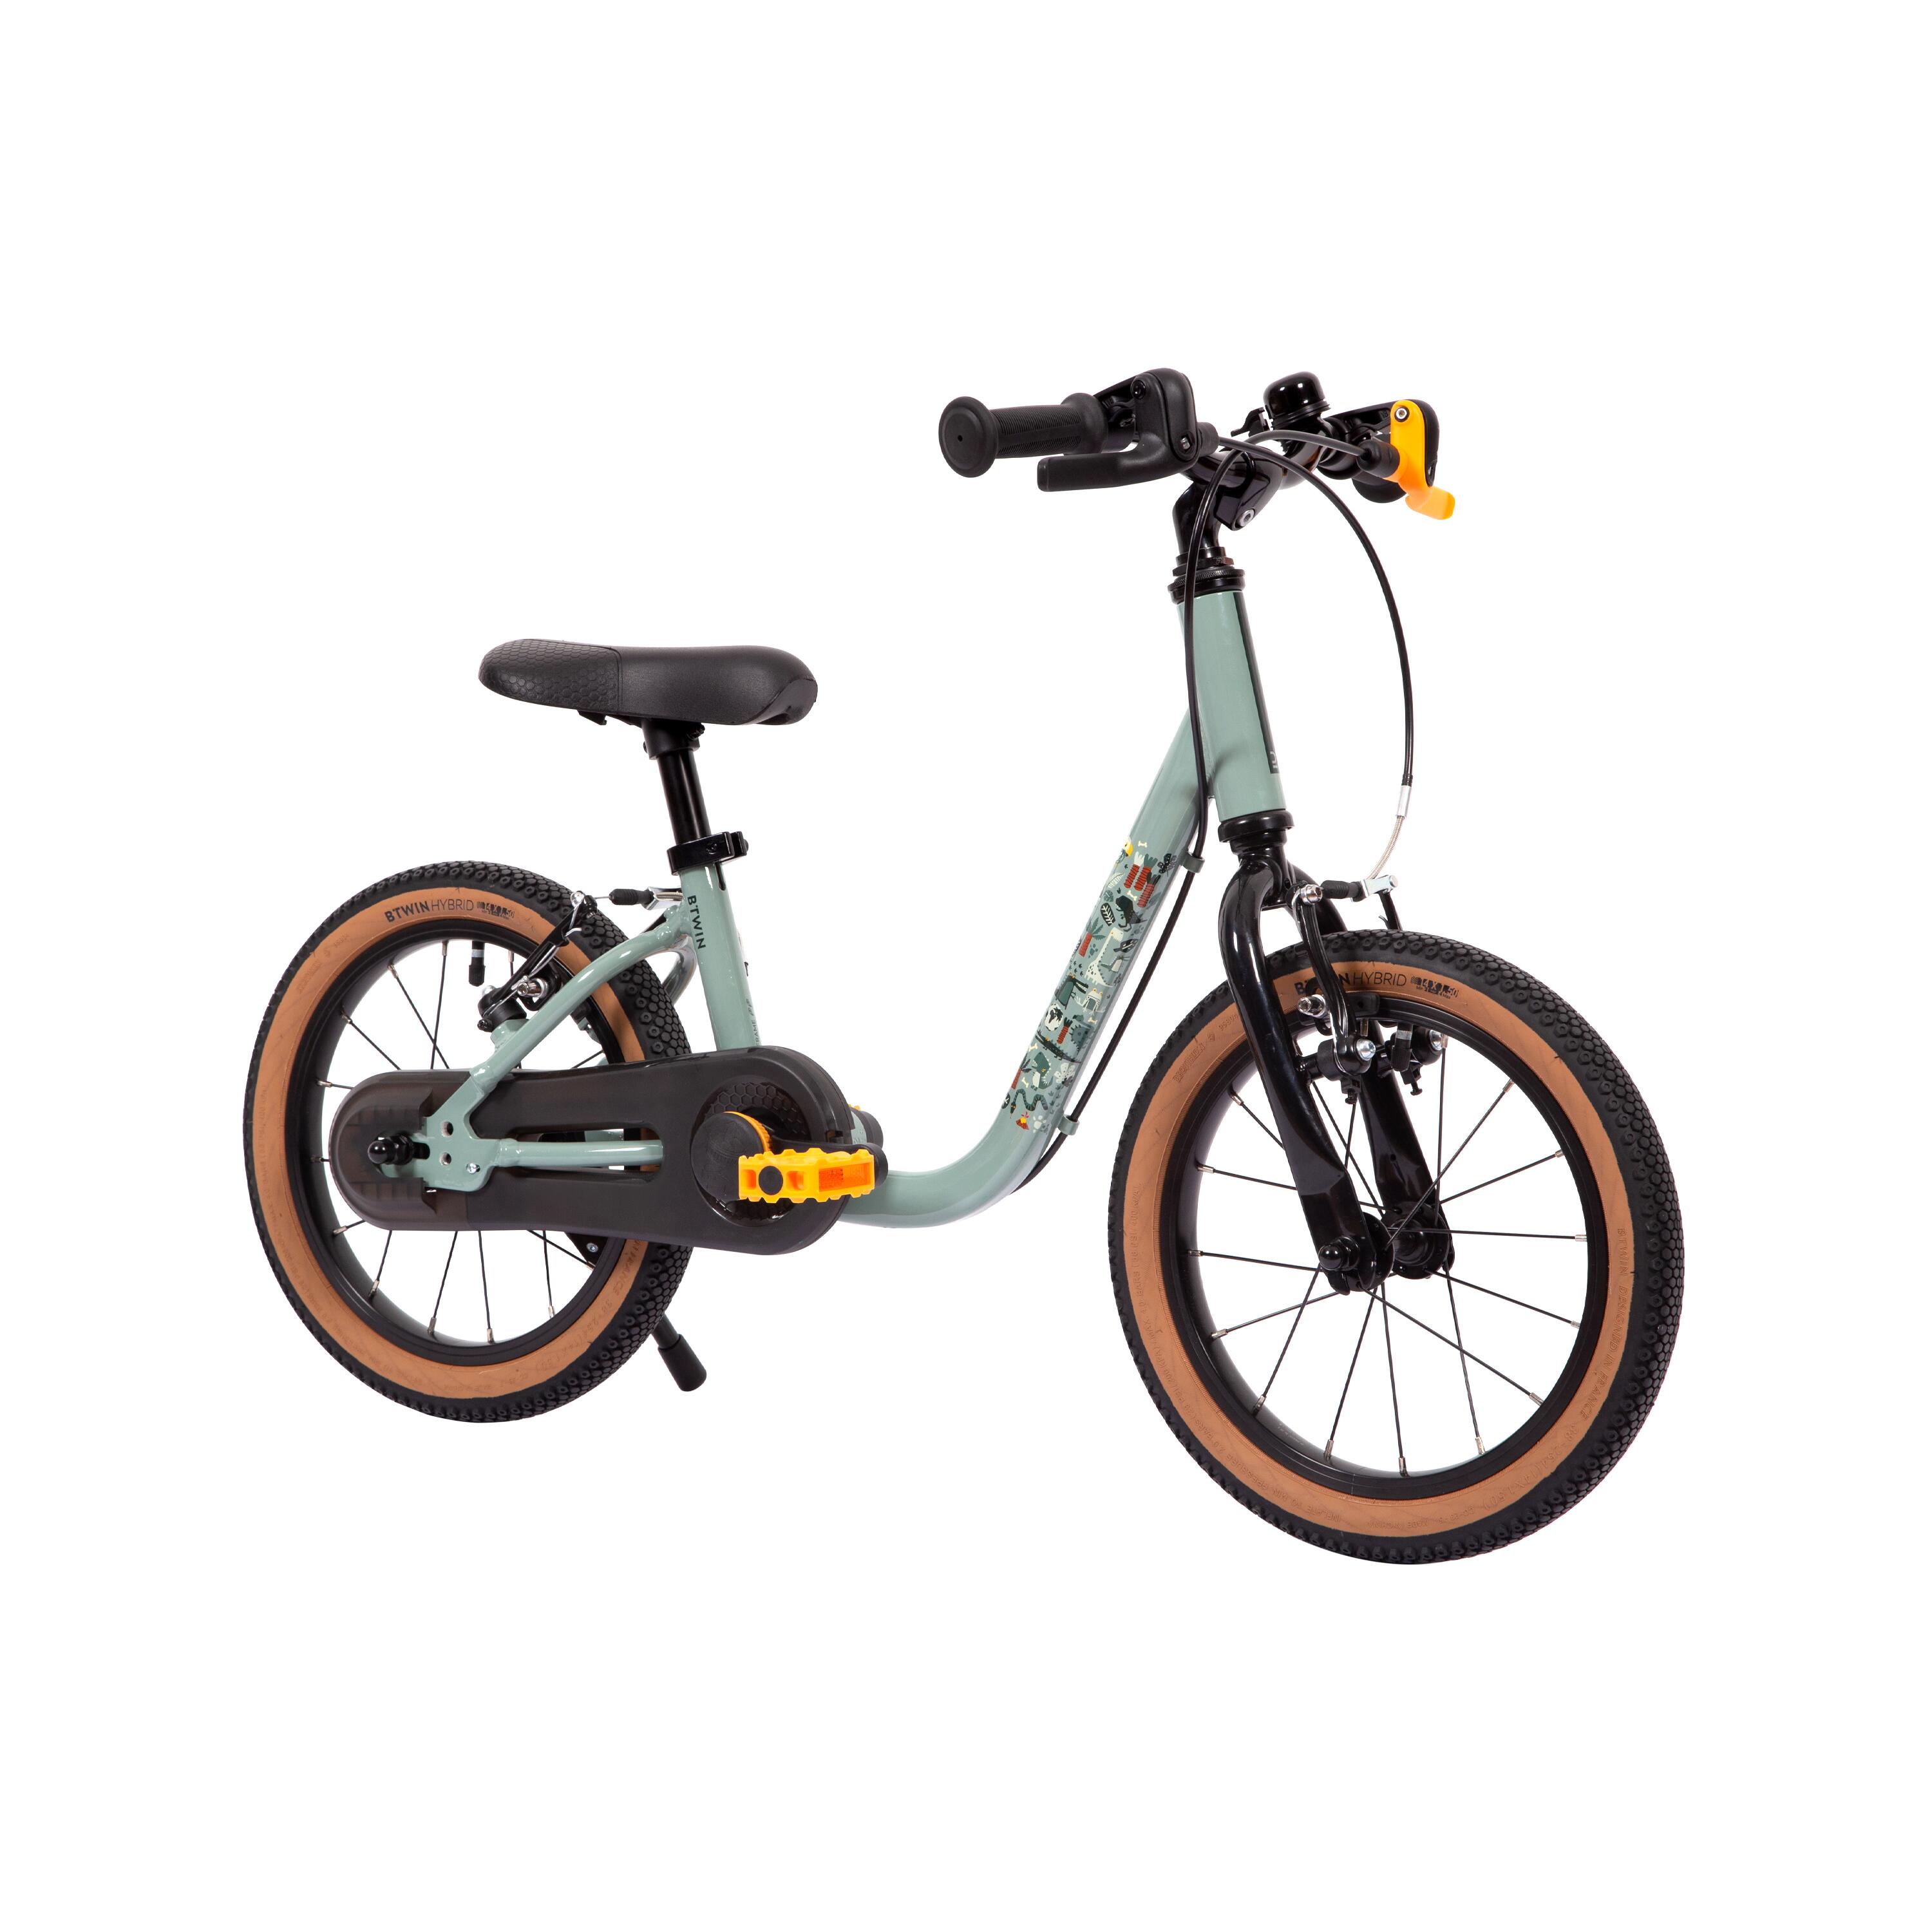 Kids’ 2-in-1 Balance Bike - 900